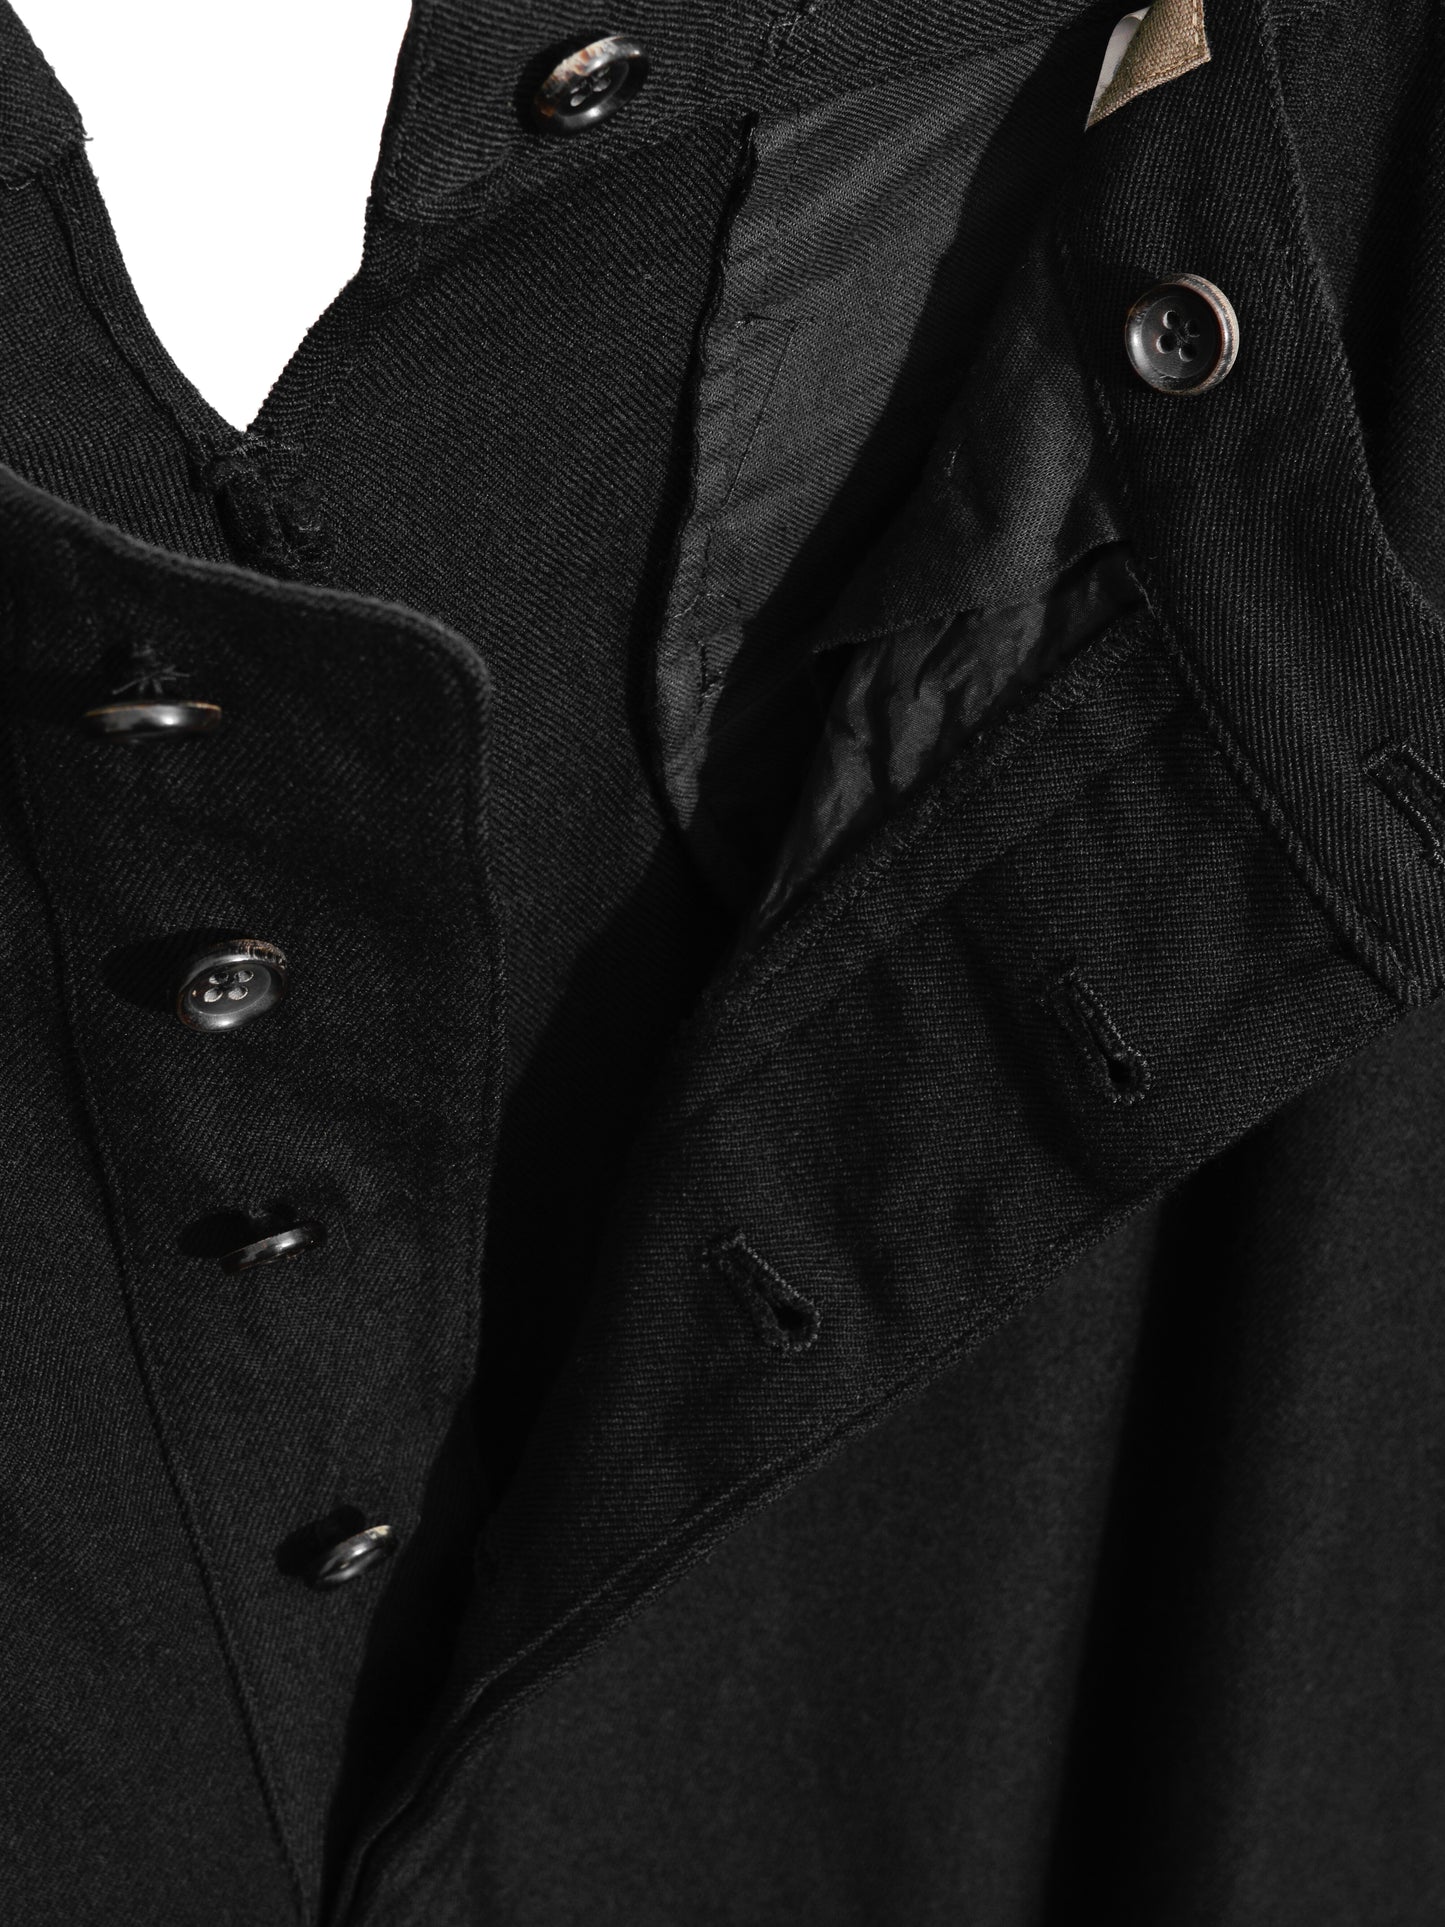 suspender trousers black ∙ wool ∙ medium